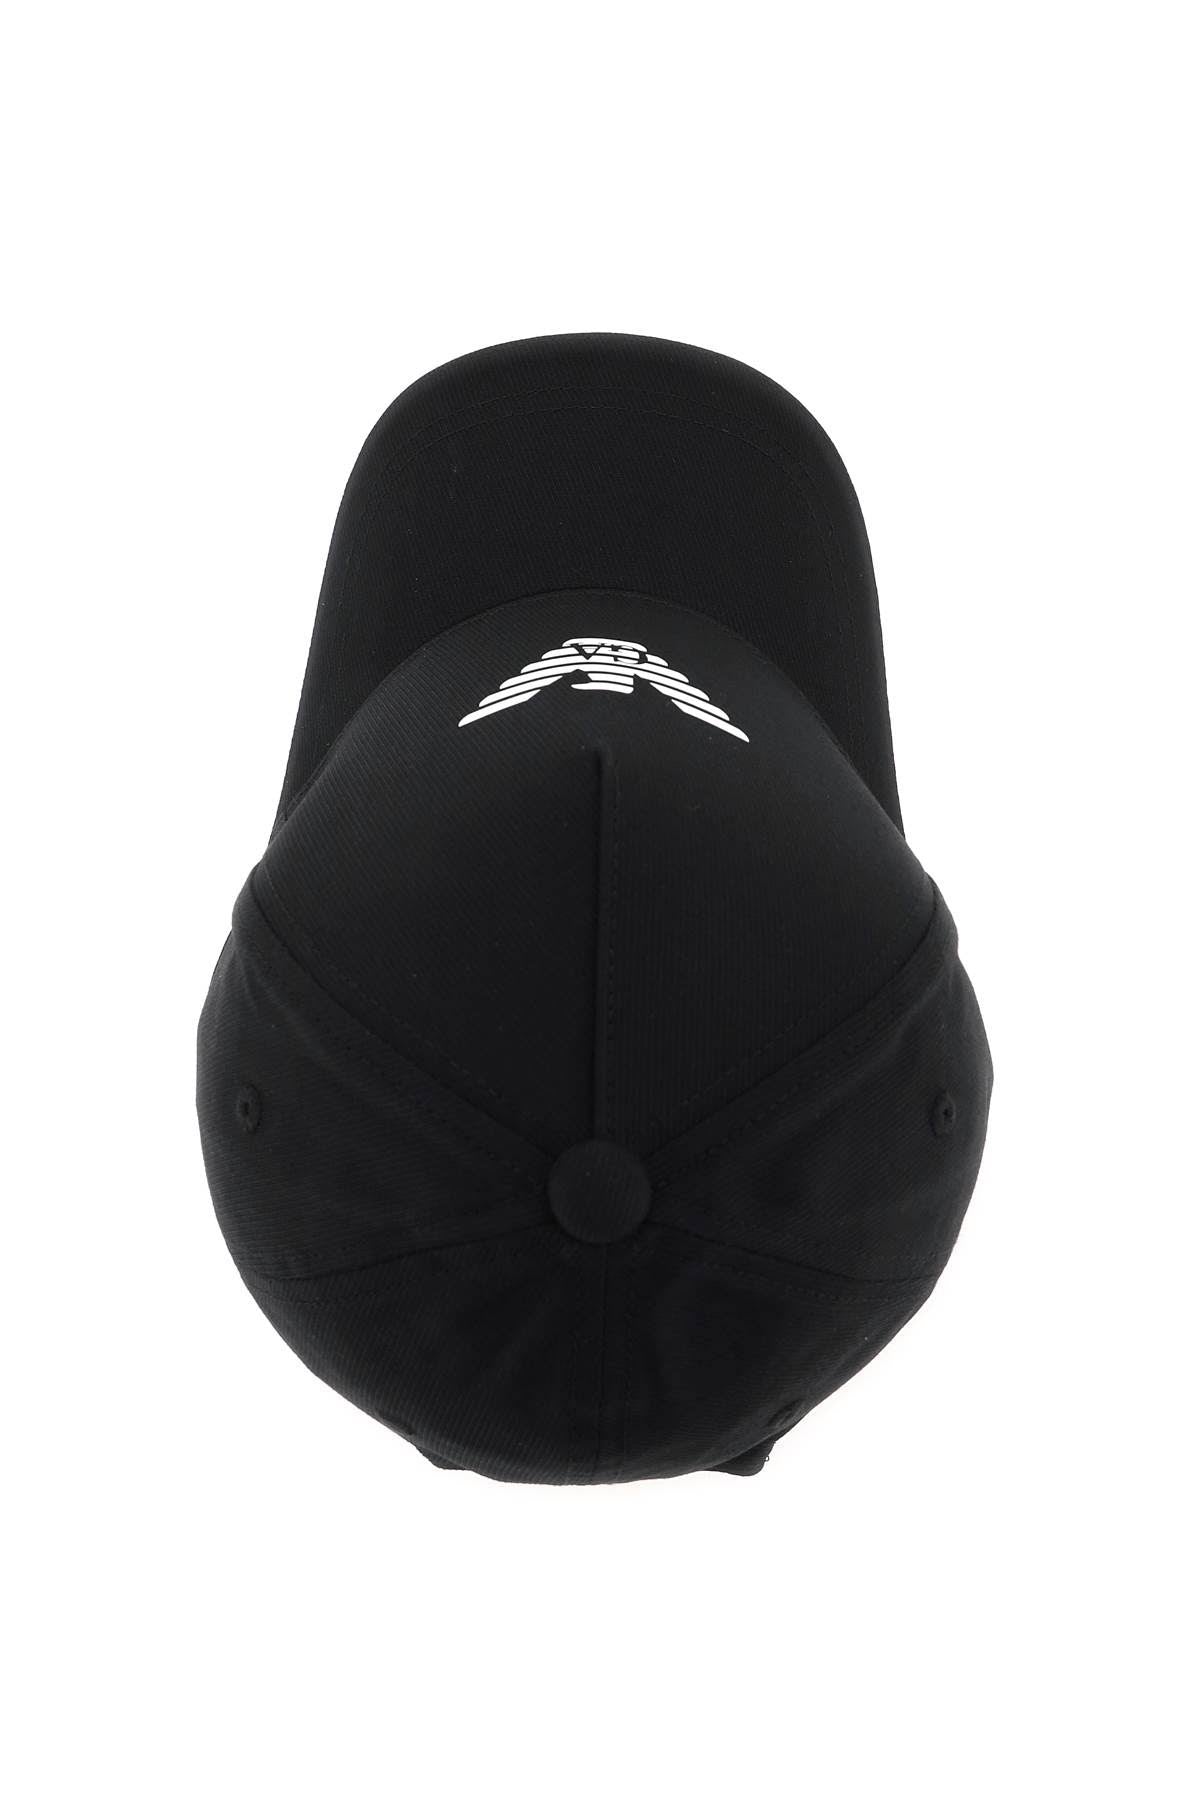 Emporio Armani Men's baseball cap with Logo